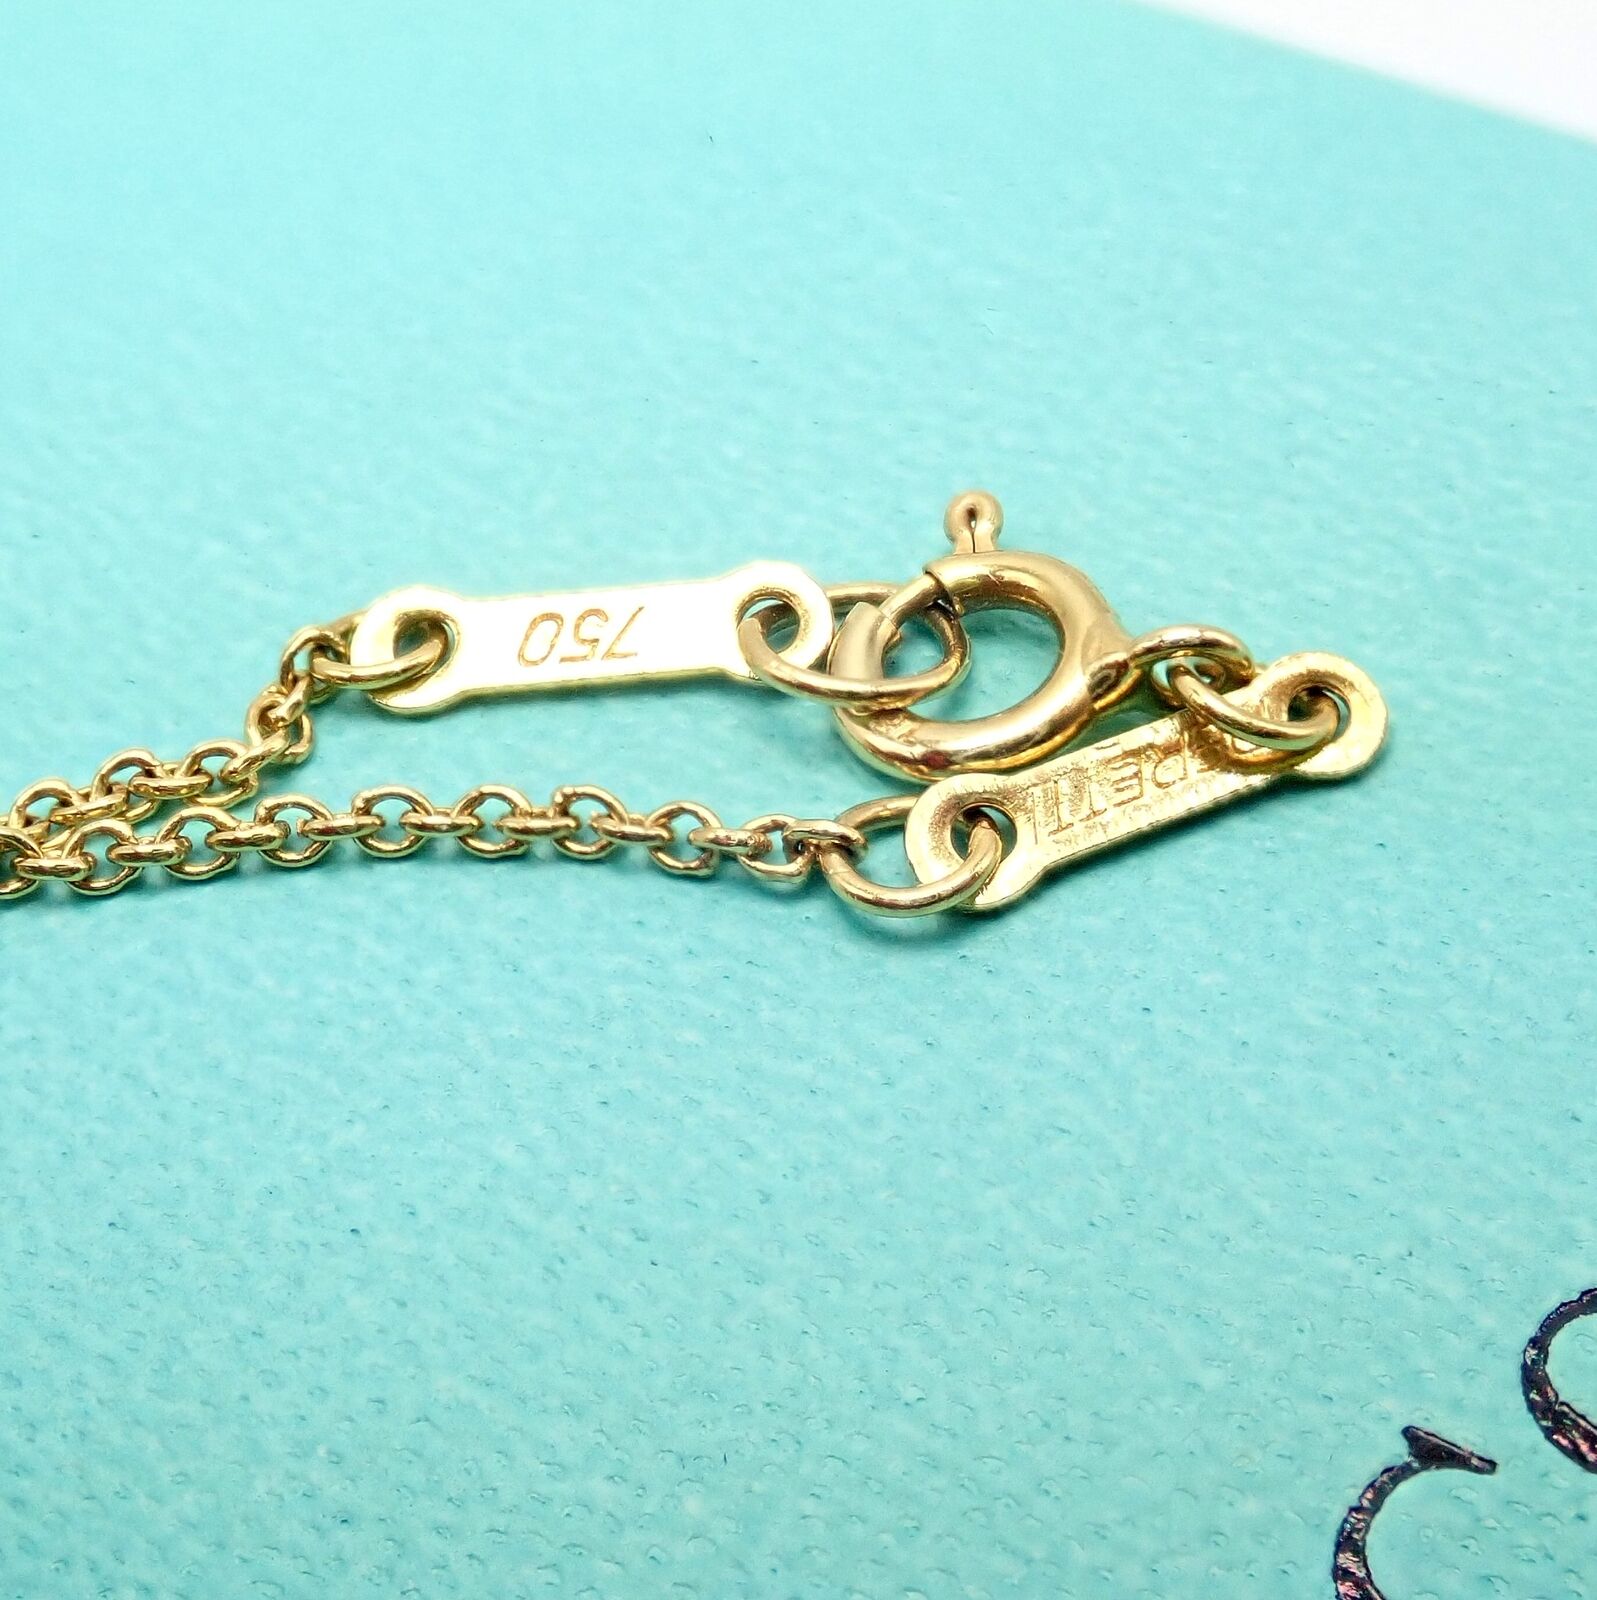 Elsa Peretti® Open Heart earrings in 18k rose gold. More sizes